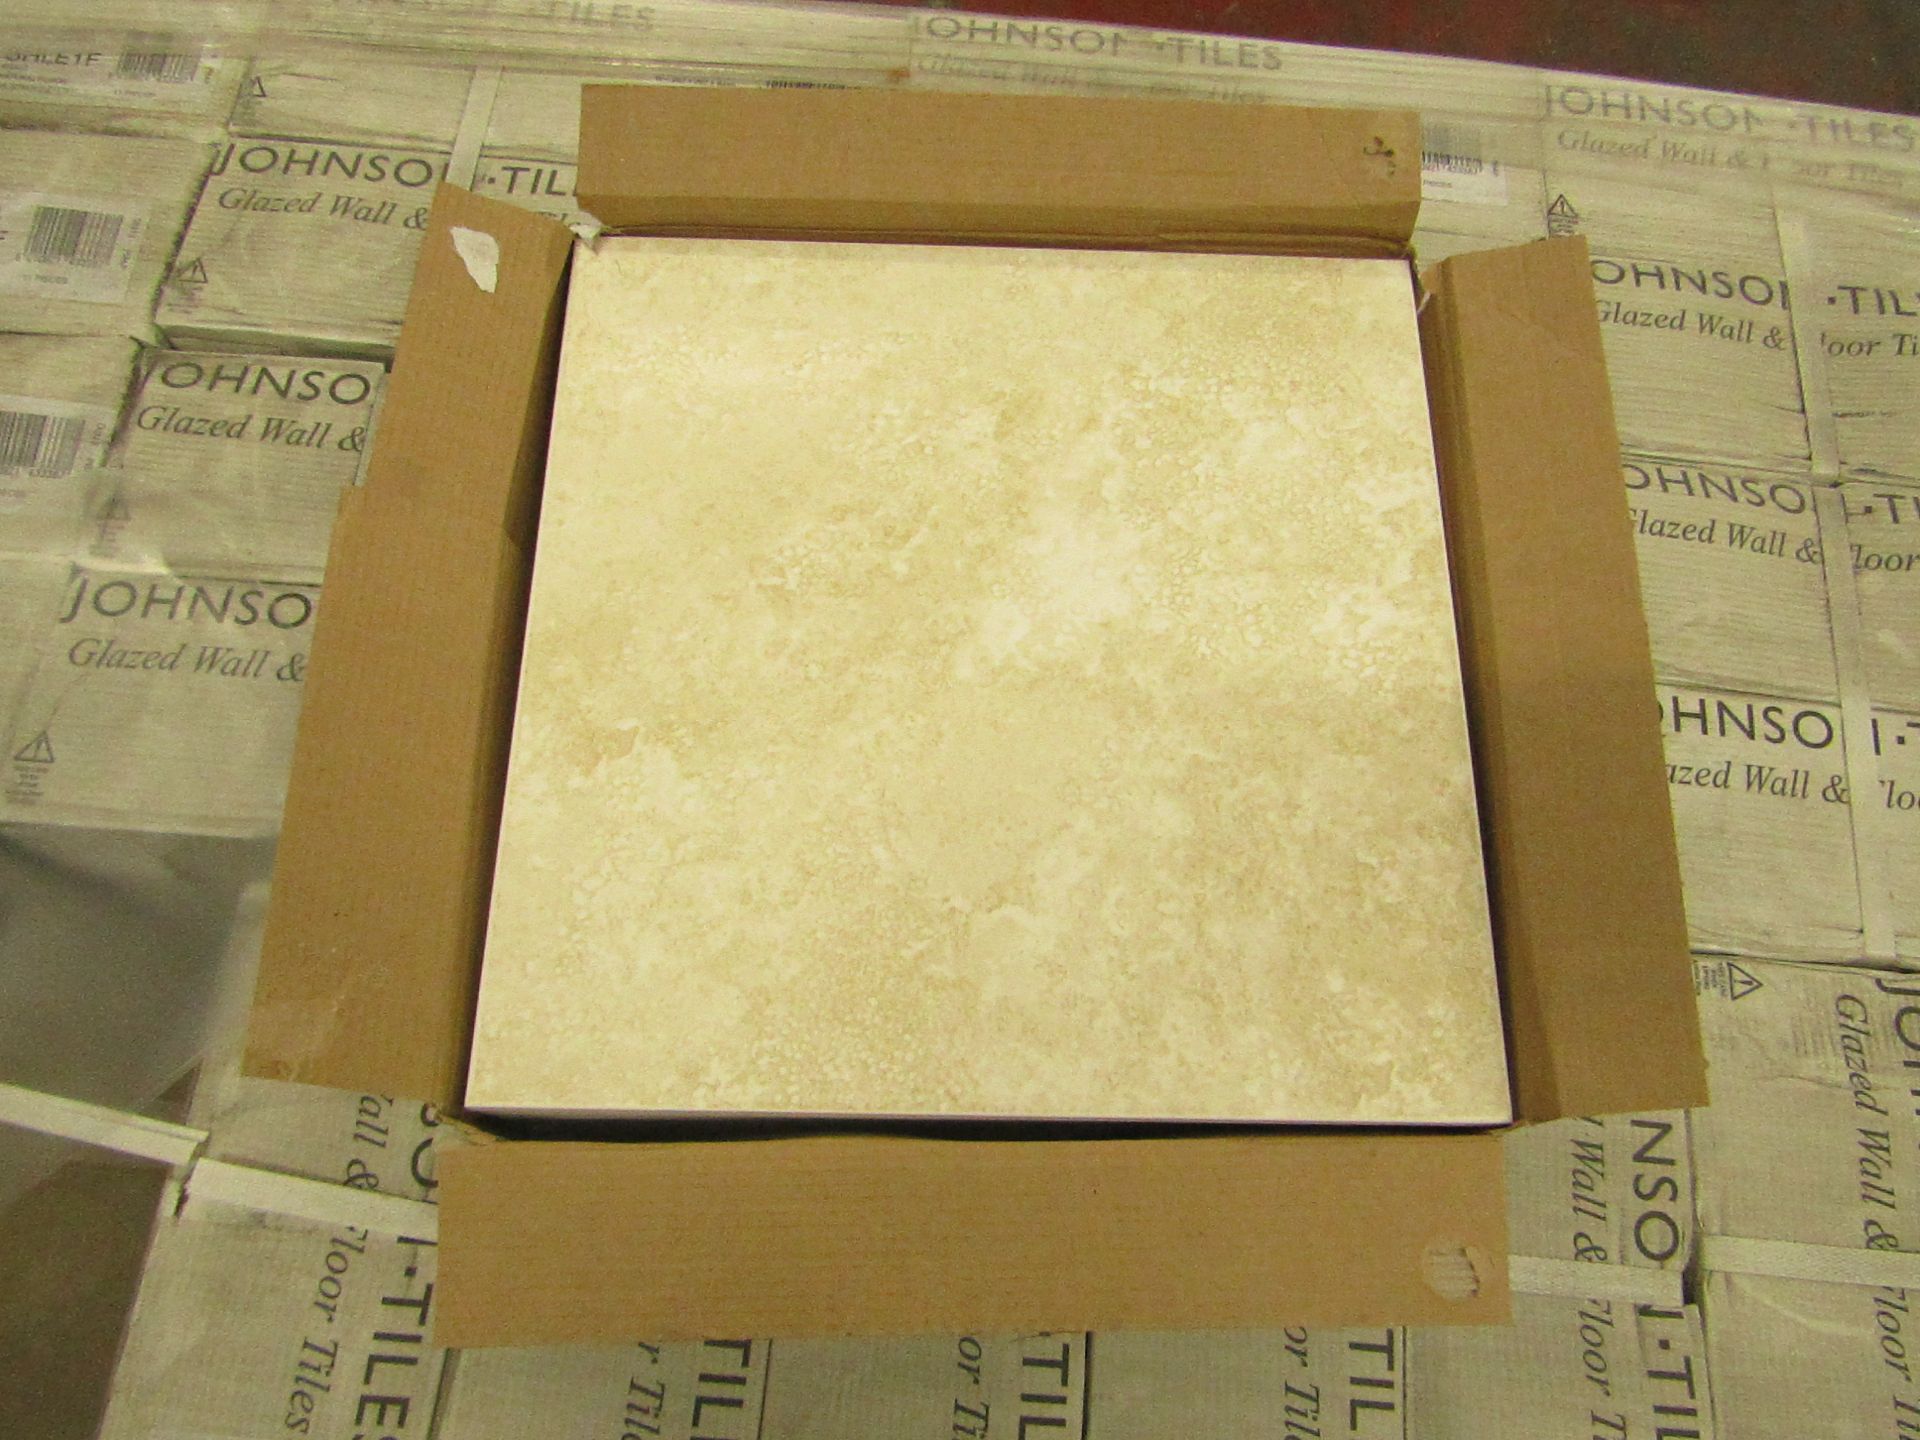 52x Packs of 11 Johnson Tiles Shale Natural Floor 300 x 300mm glazed wall & floor tiles (DA/3030/